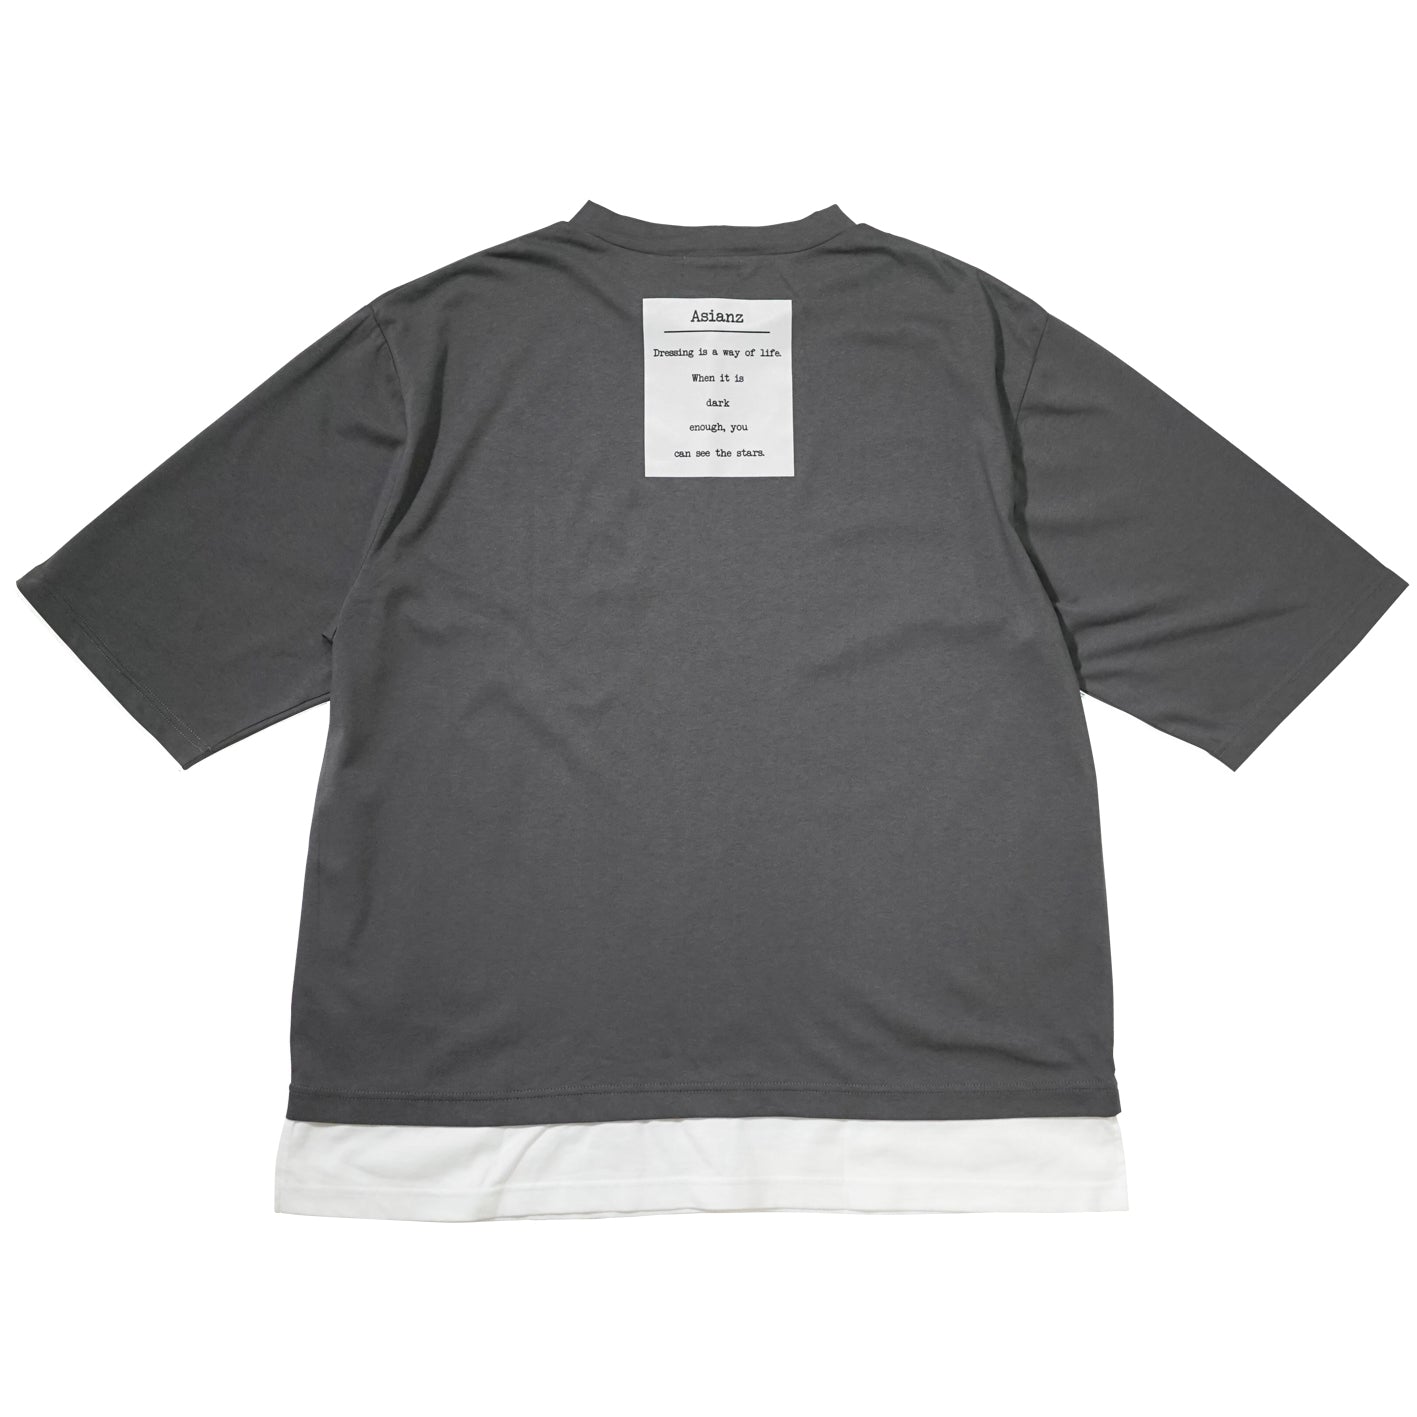 (セール商品)ASIANZ 5部丈 BACKラベルロゴ Tシャツ